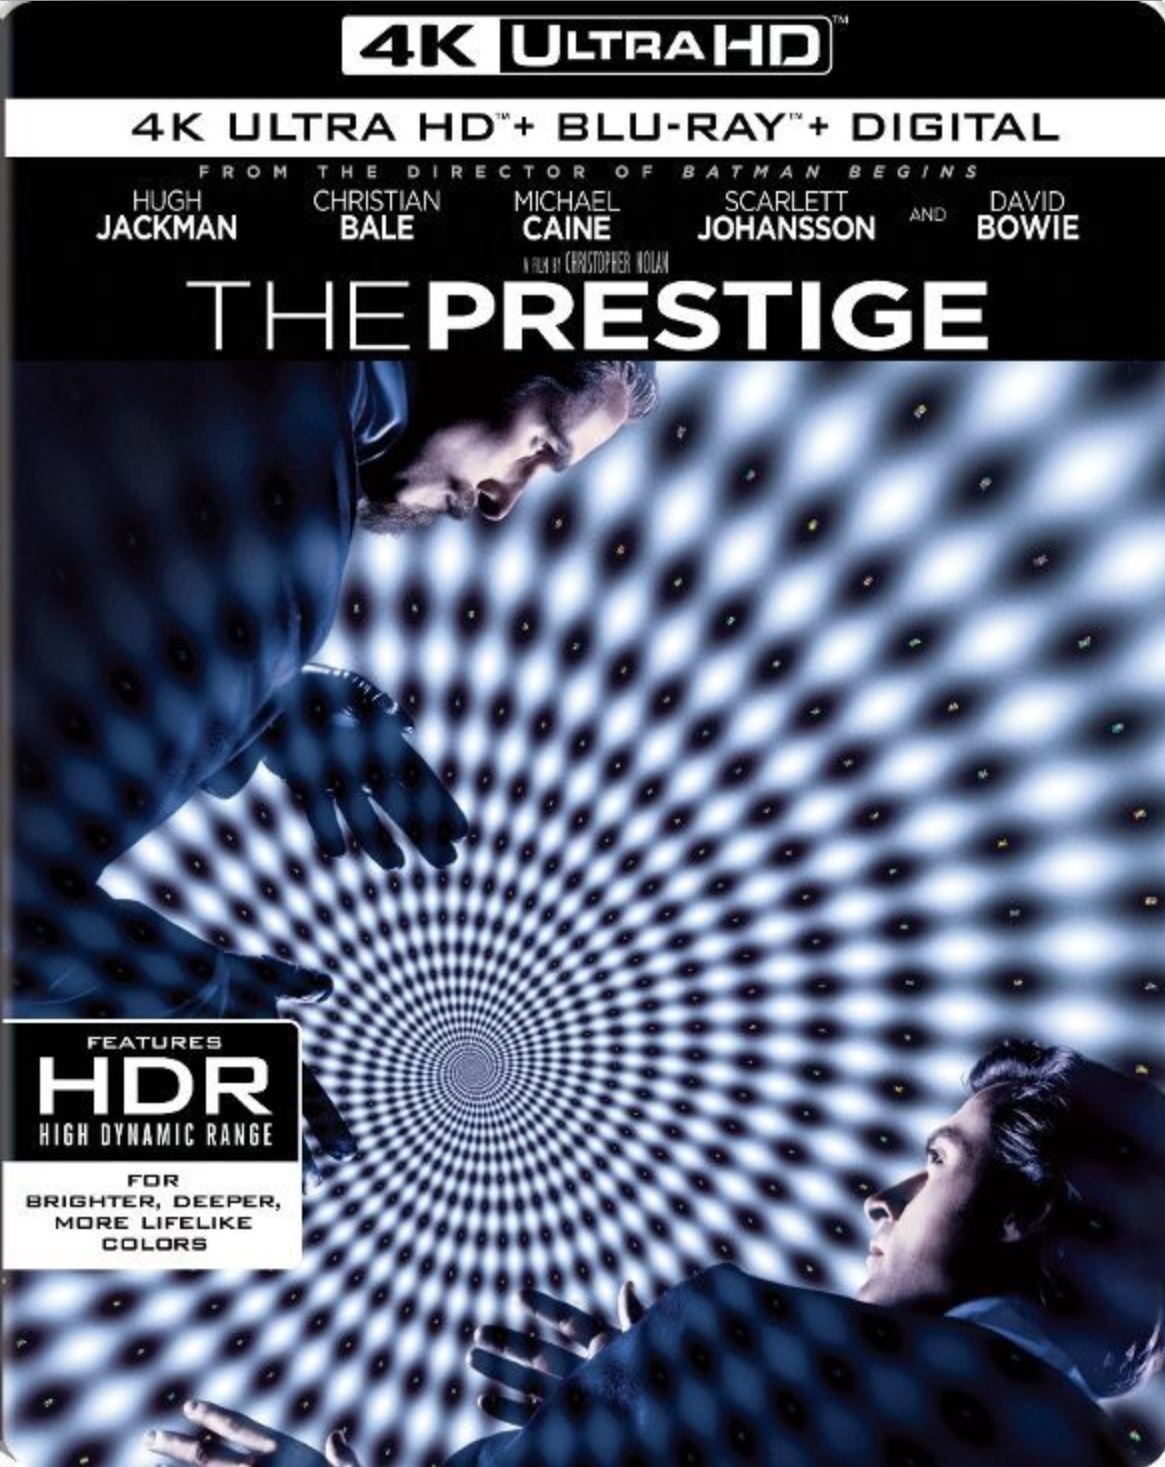 The Prestige.jpg